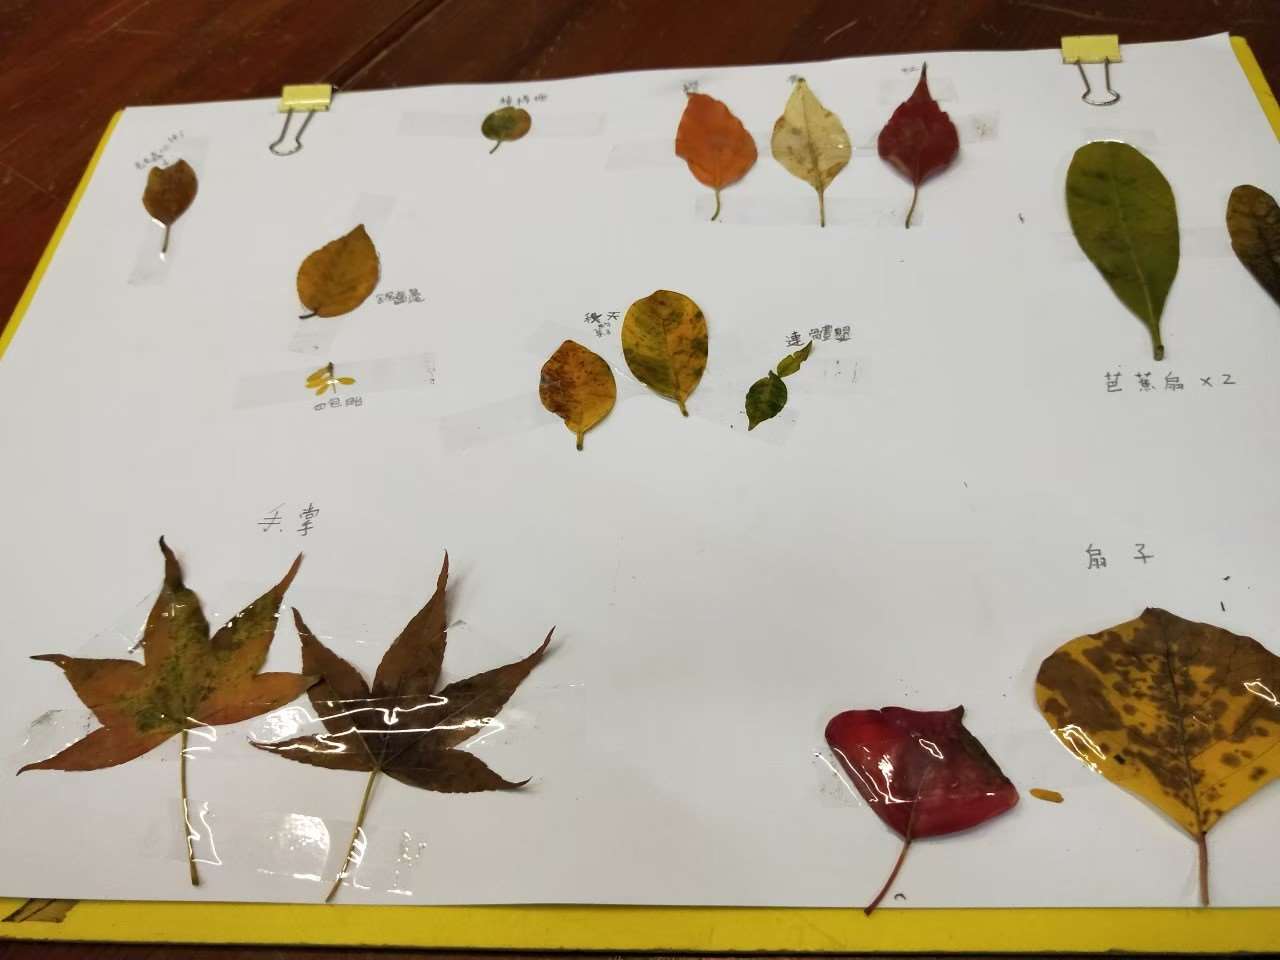 我發現了許多葉子的不同外形